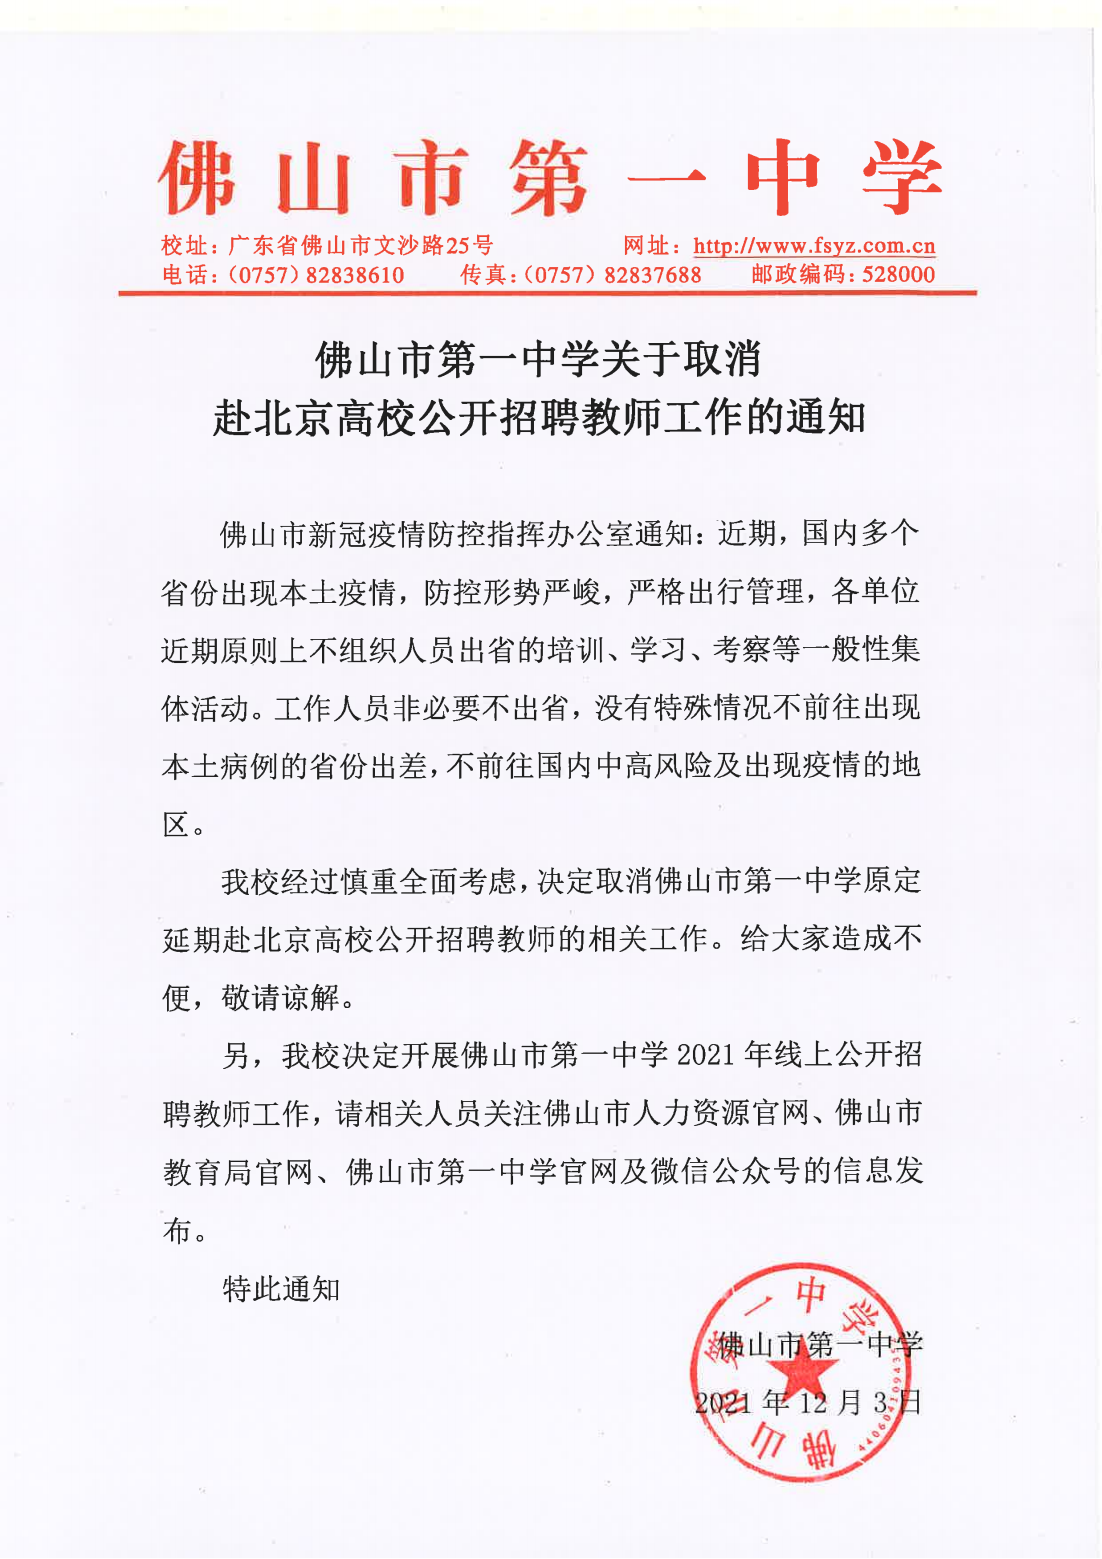 佛山市第一中学关于取消赴北京高校公开招聘教师工作的通知_00.png